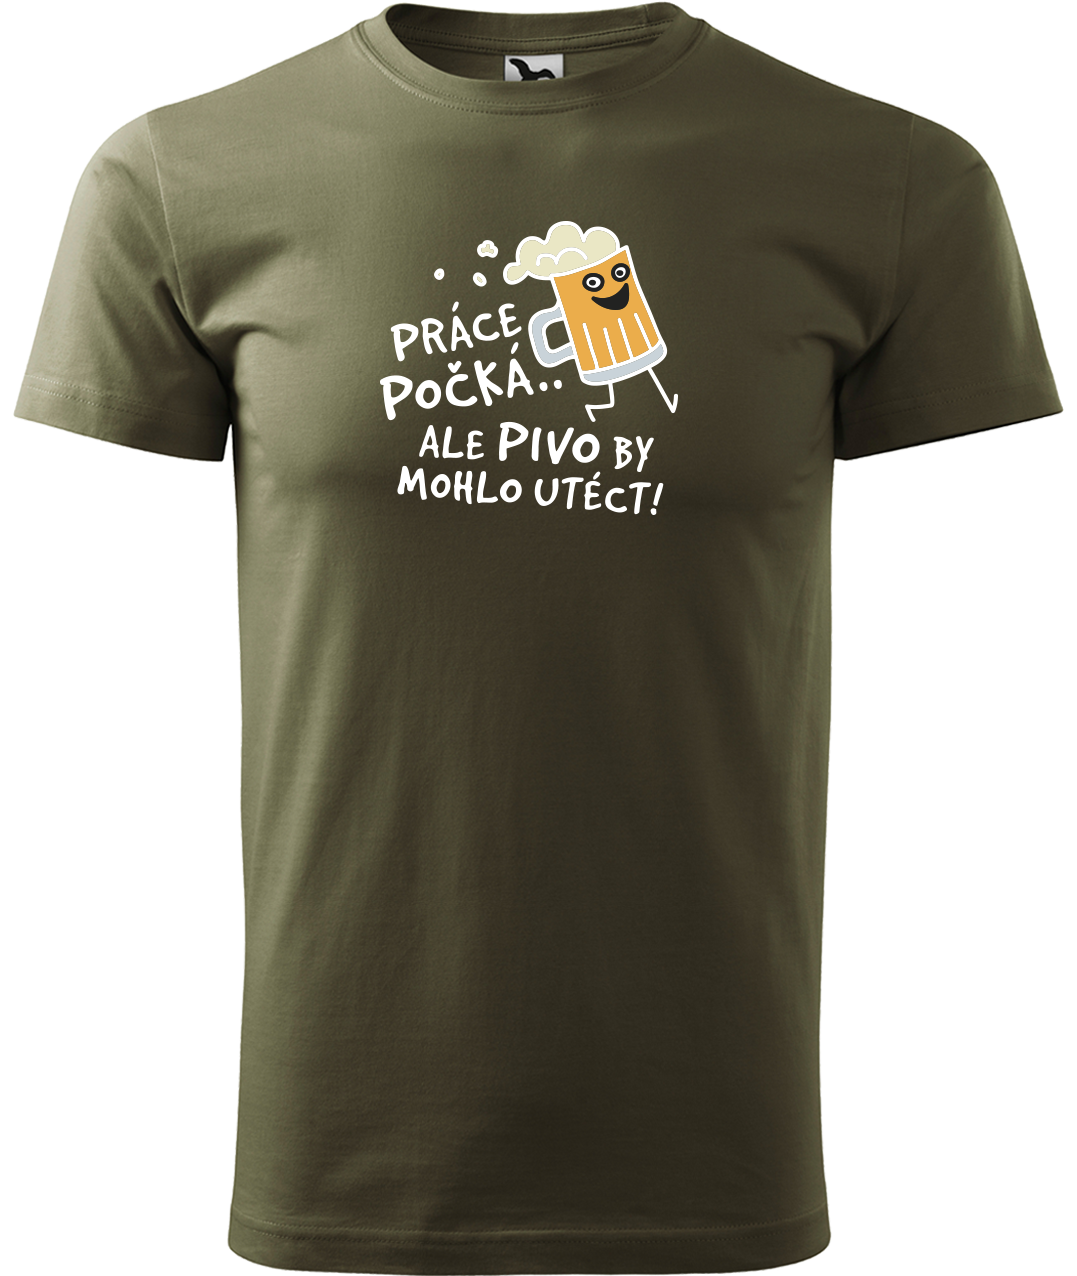 Pivní tričko - Pivo by mohlo utéct Velikost: M, Barva: Military (69)